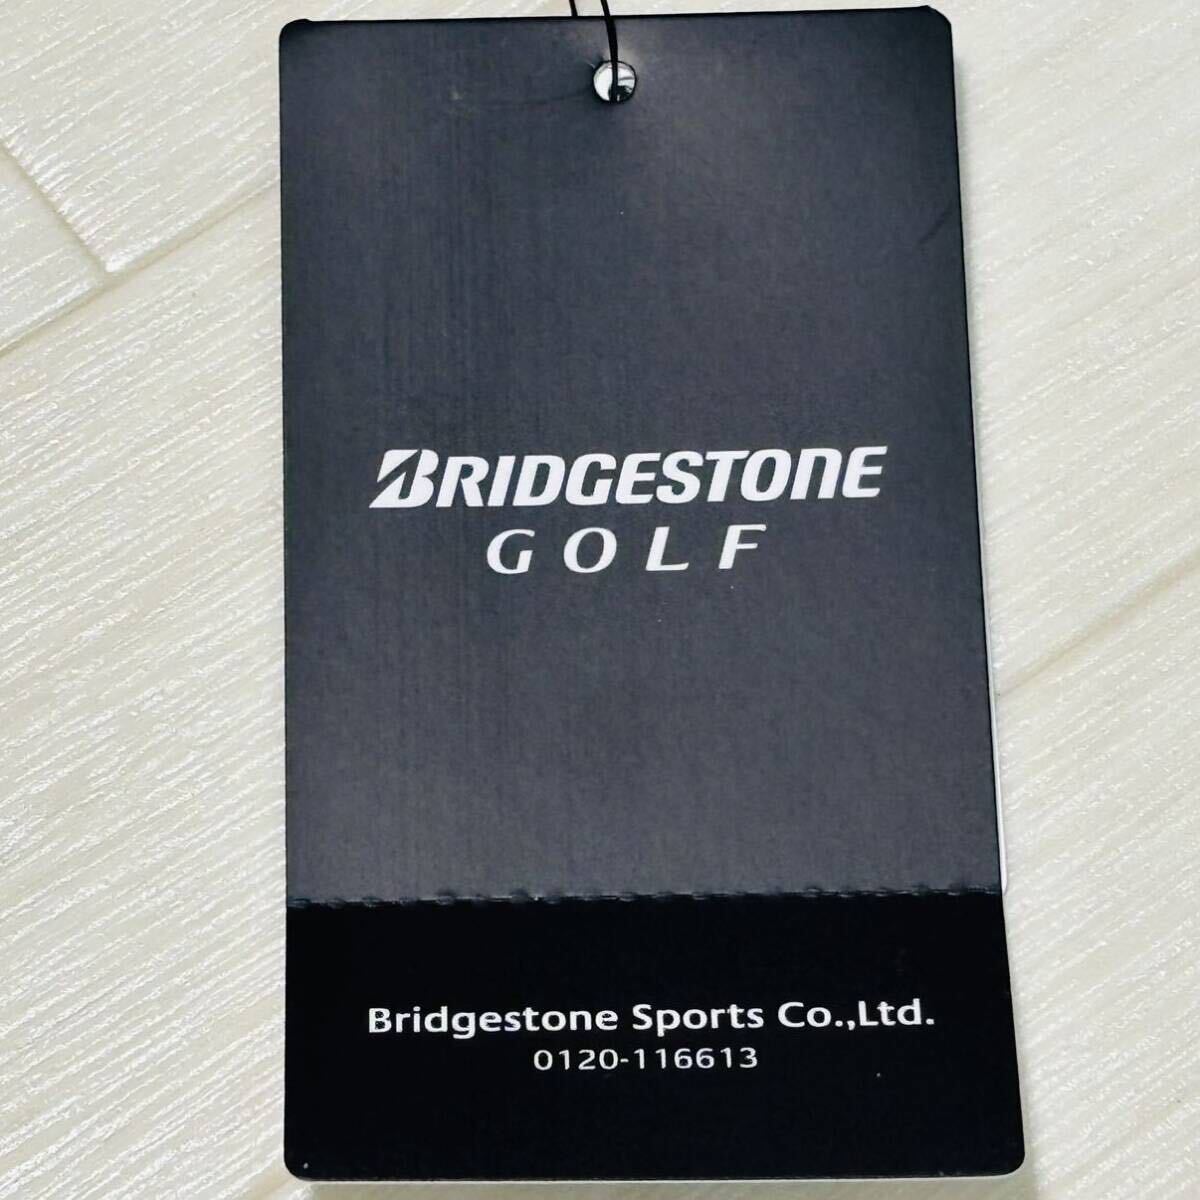  новый товар * Bridgestone Golf BRIDGESTONE GOLF общий рисунок . пот скорость . короткий рукав mok шея рубашка / белый / размер LL/ стоимость доставки 185 иен 